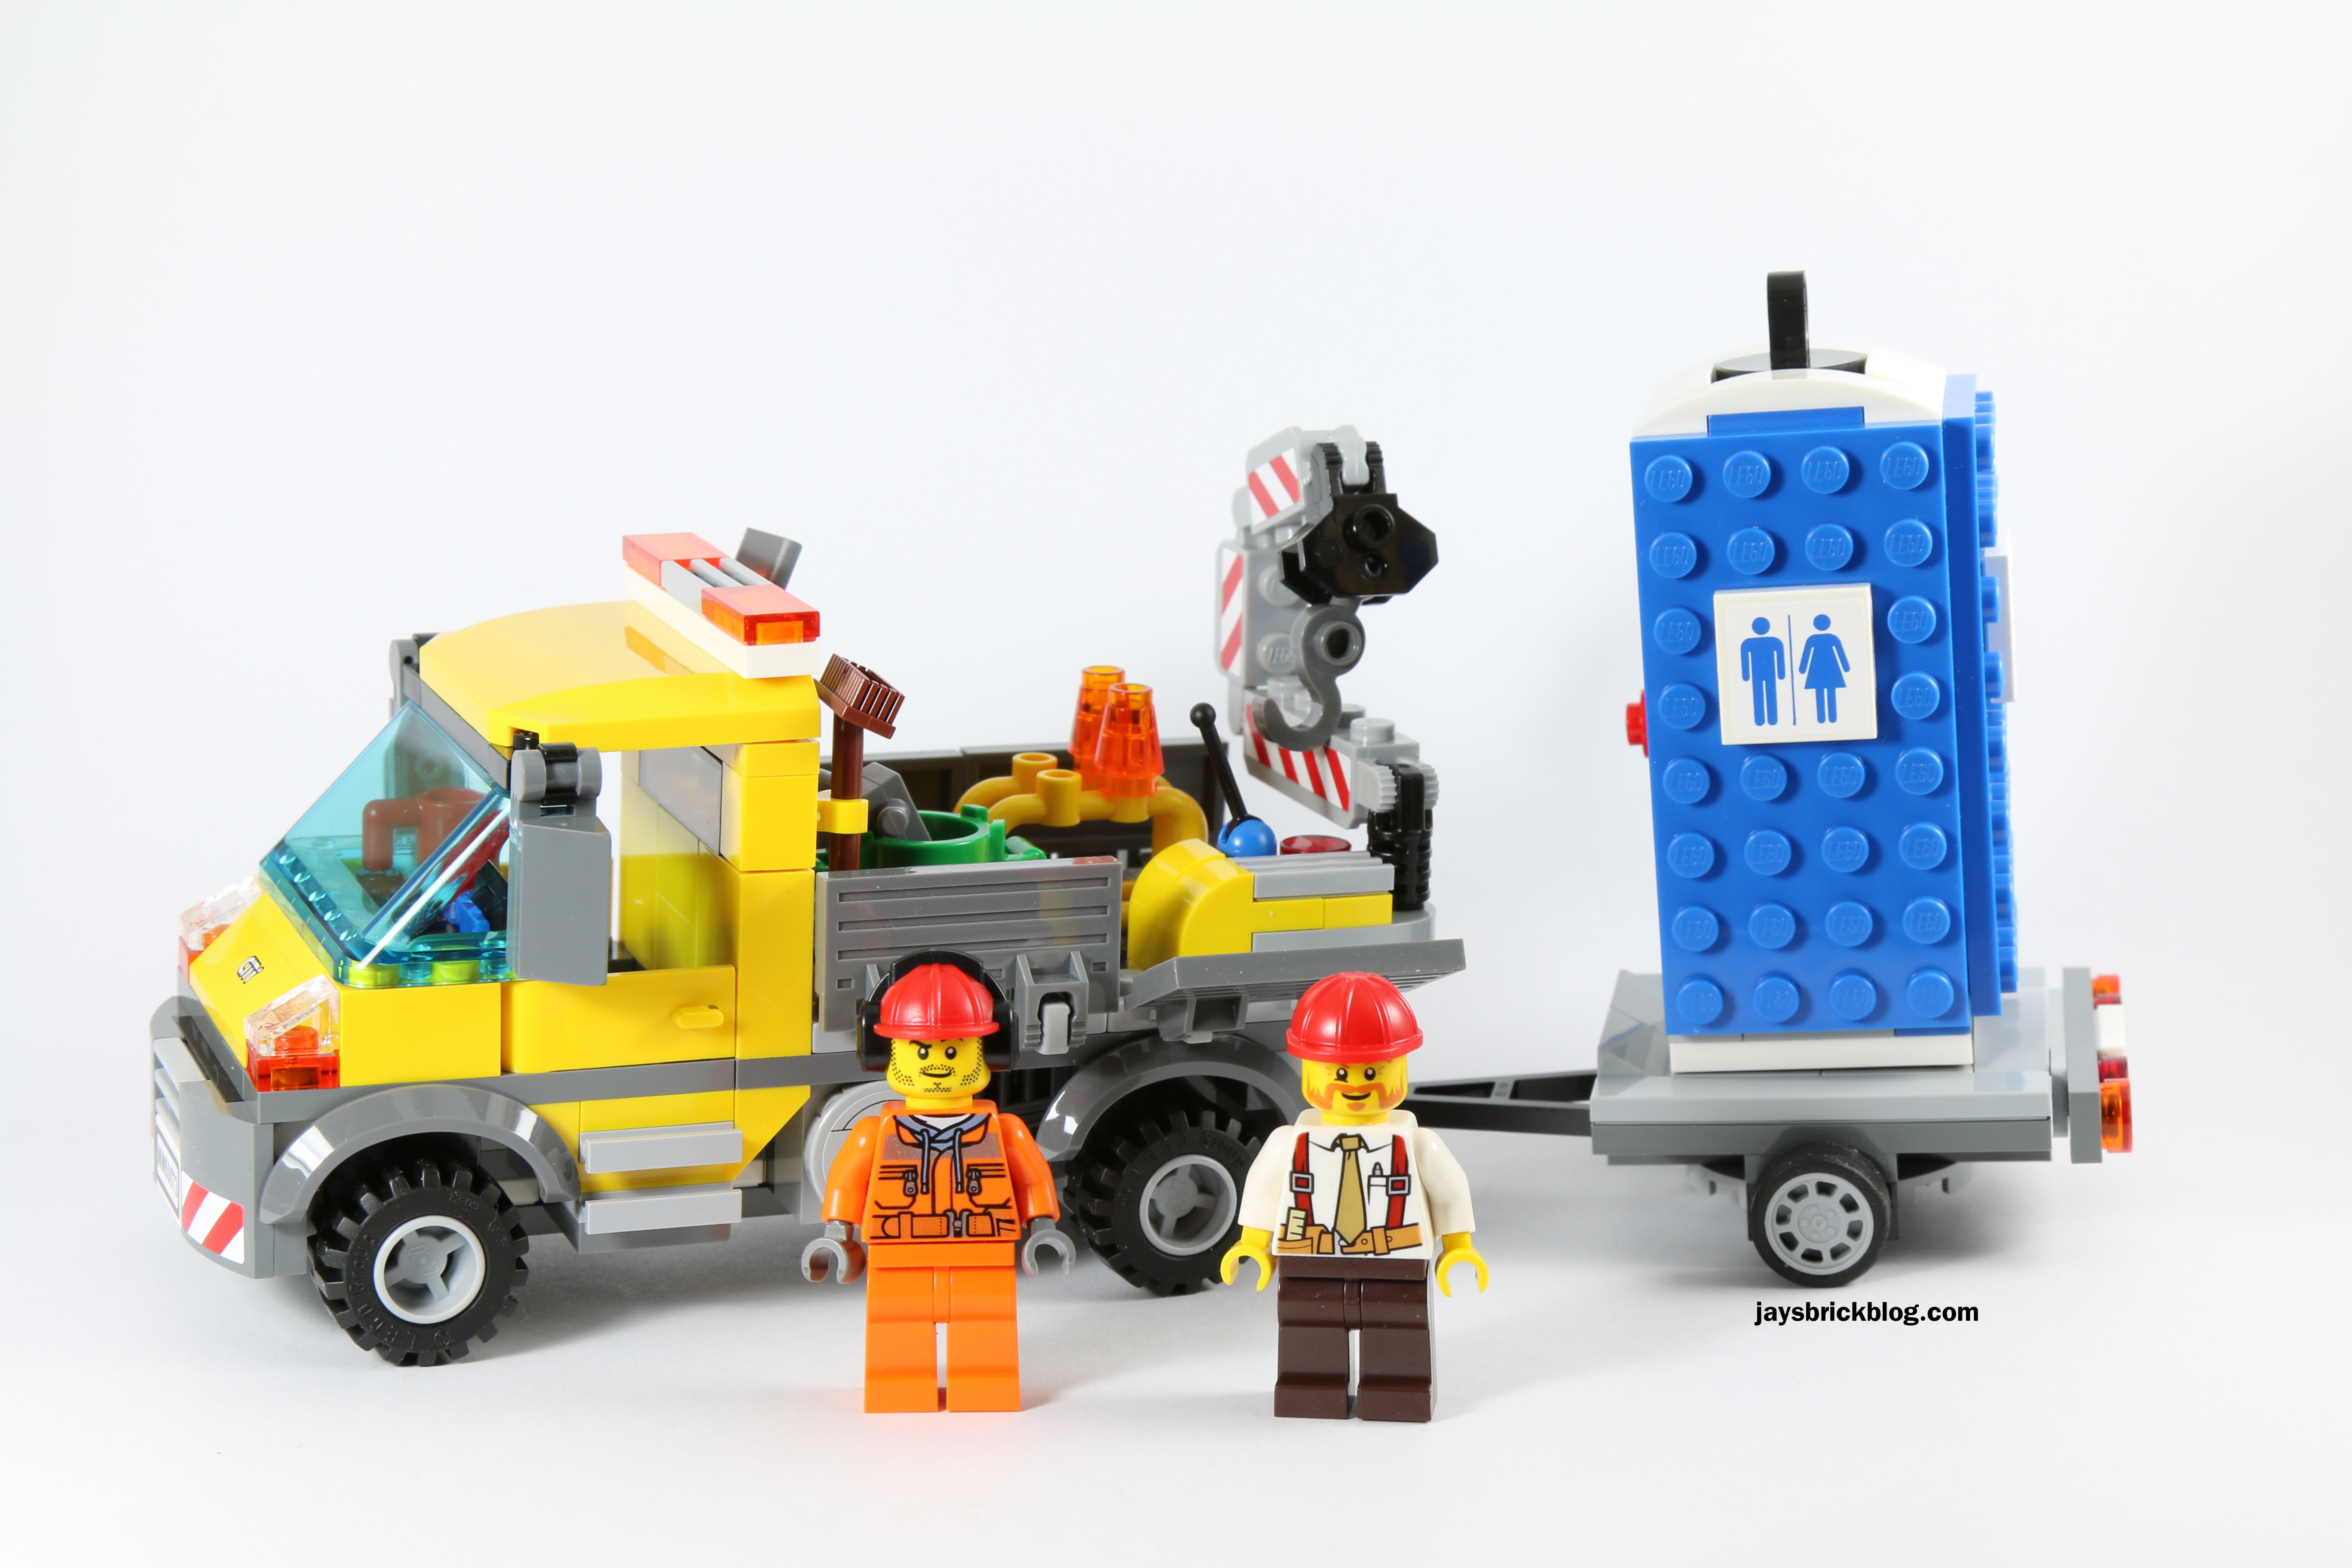 ensom Ejendomsret klynke Review: LEGO City 60073 - Service Truck - Jay's Brick Blog